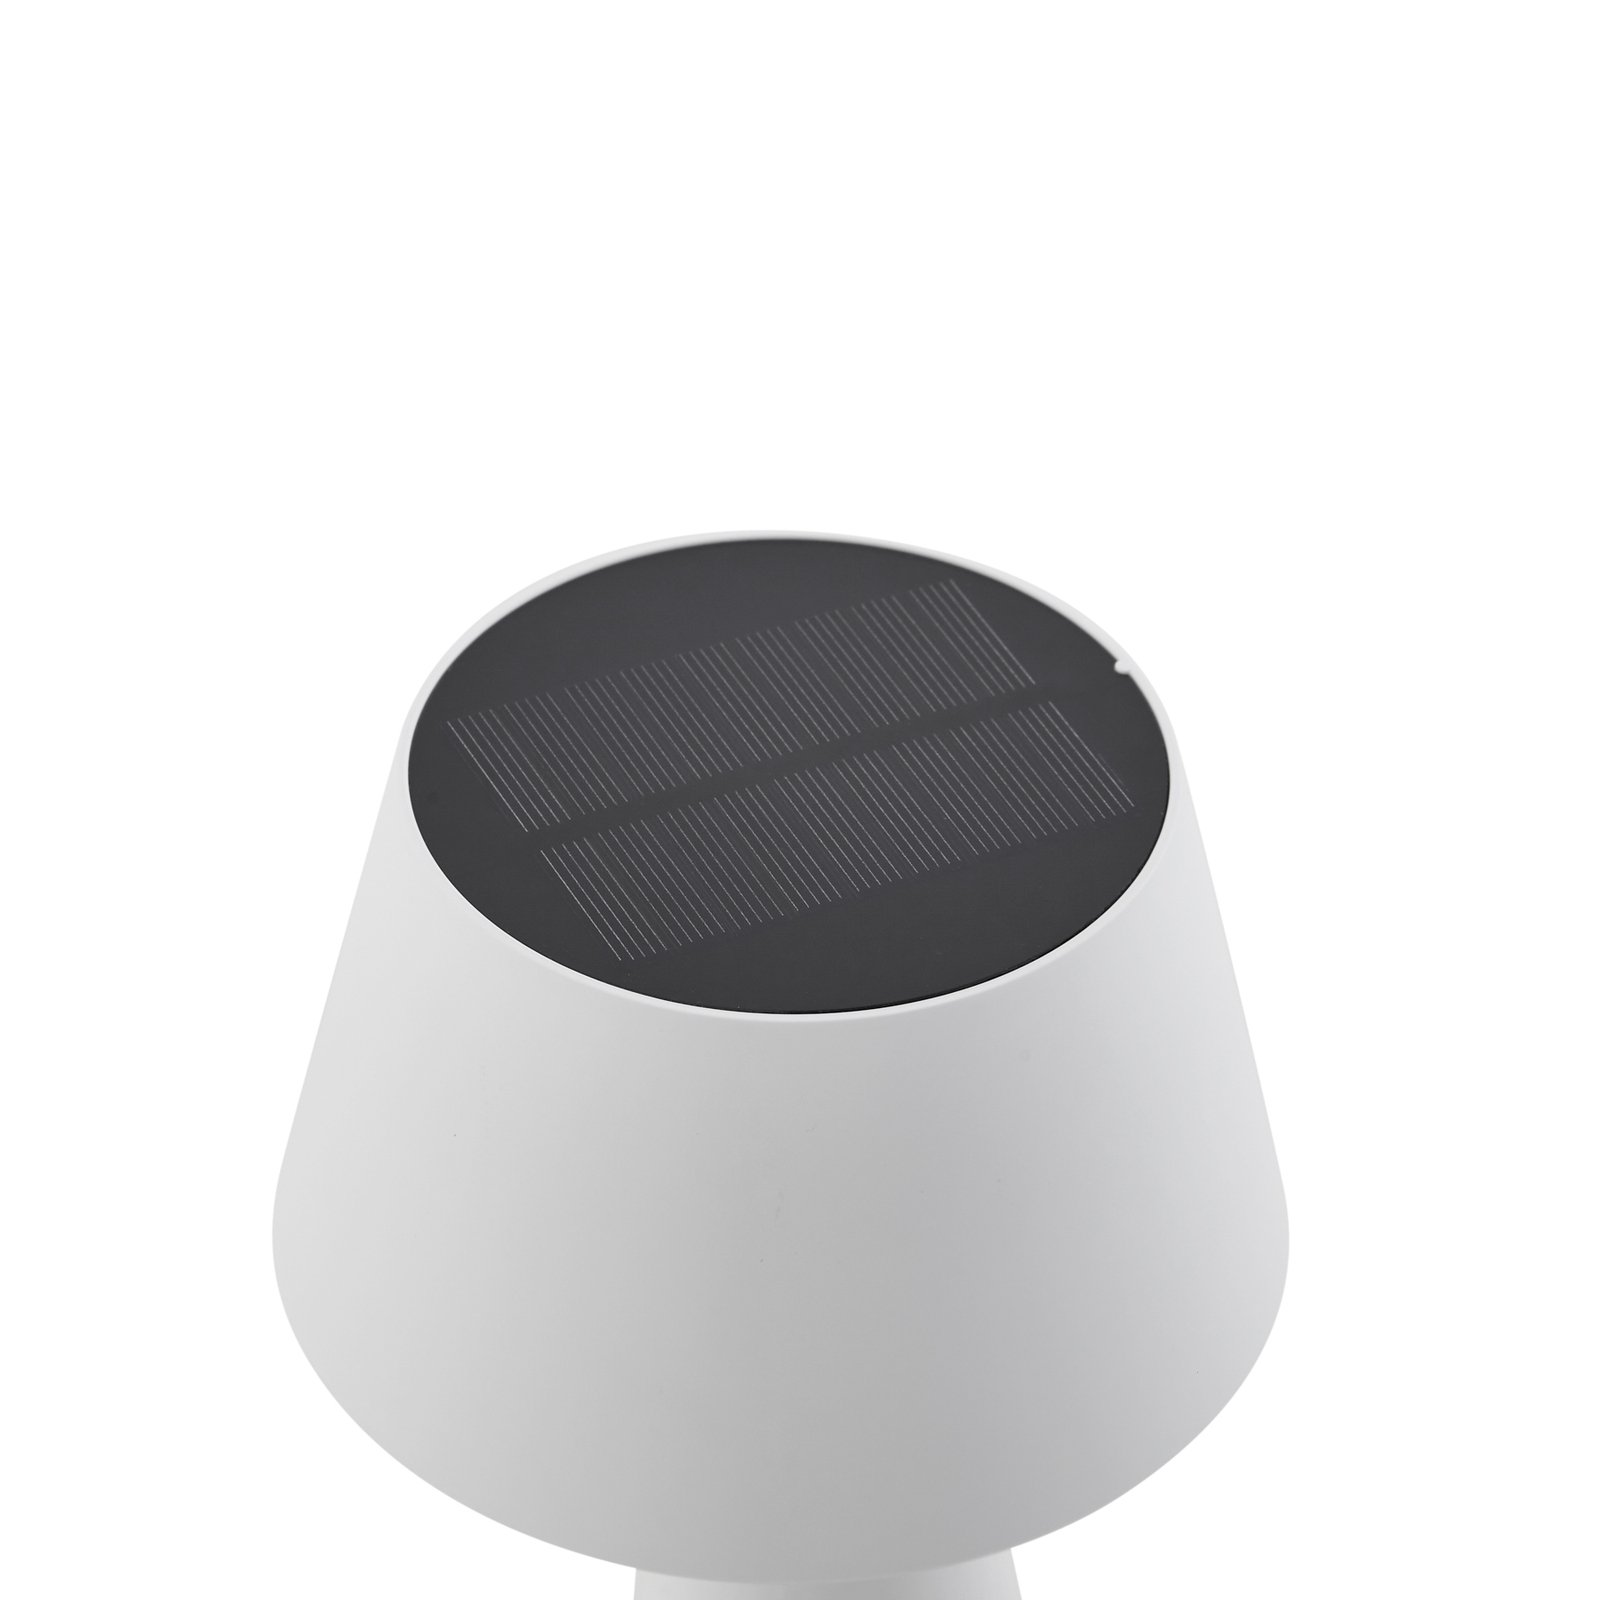 Solárna stolová lampa Lindby Lirinor LED, biela, 4 000 K